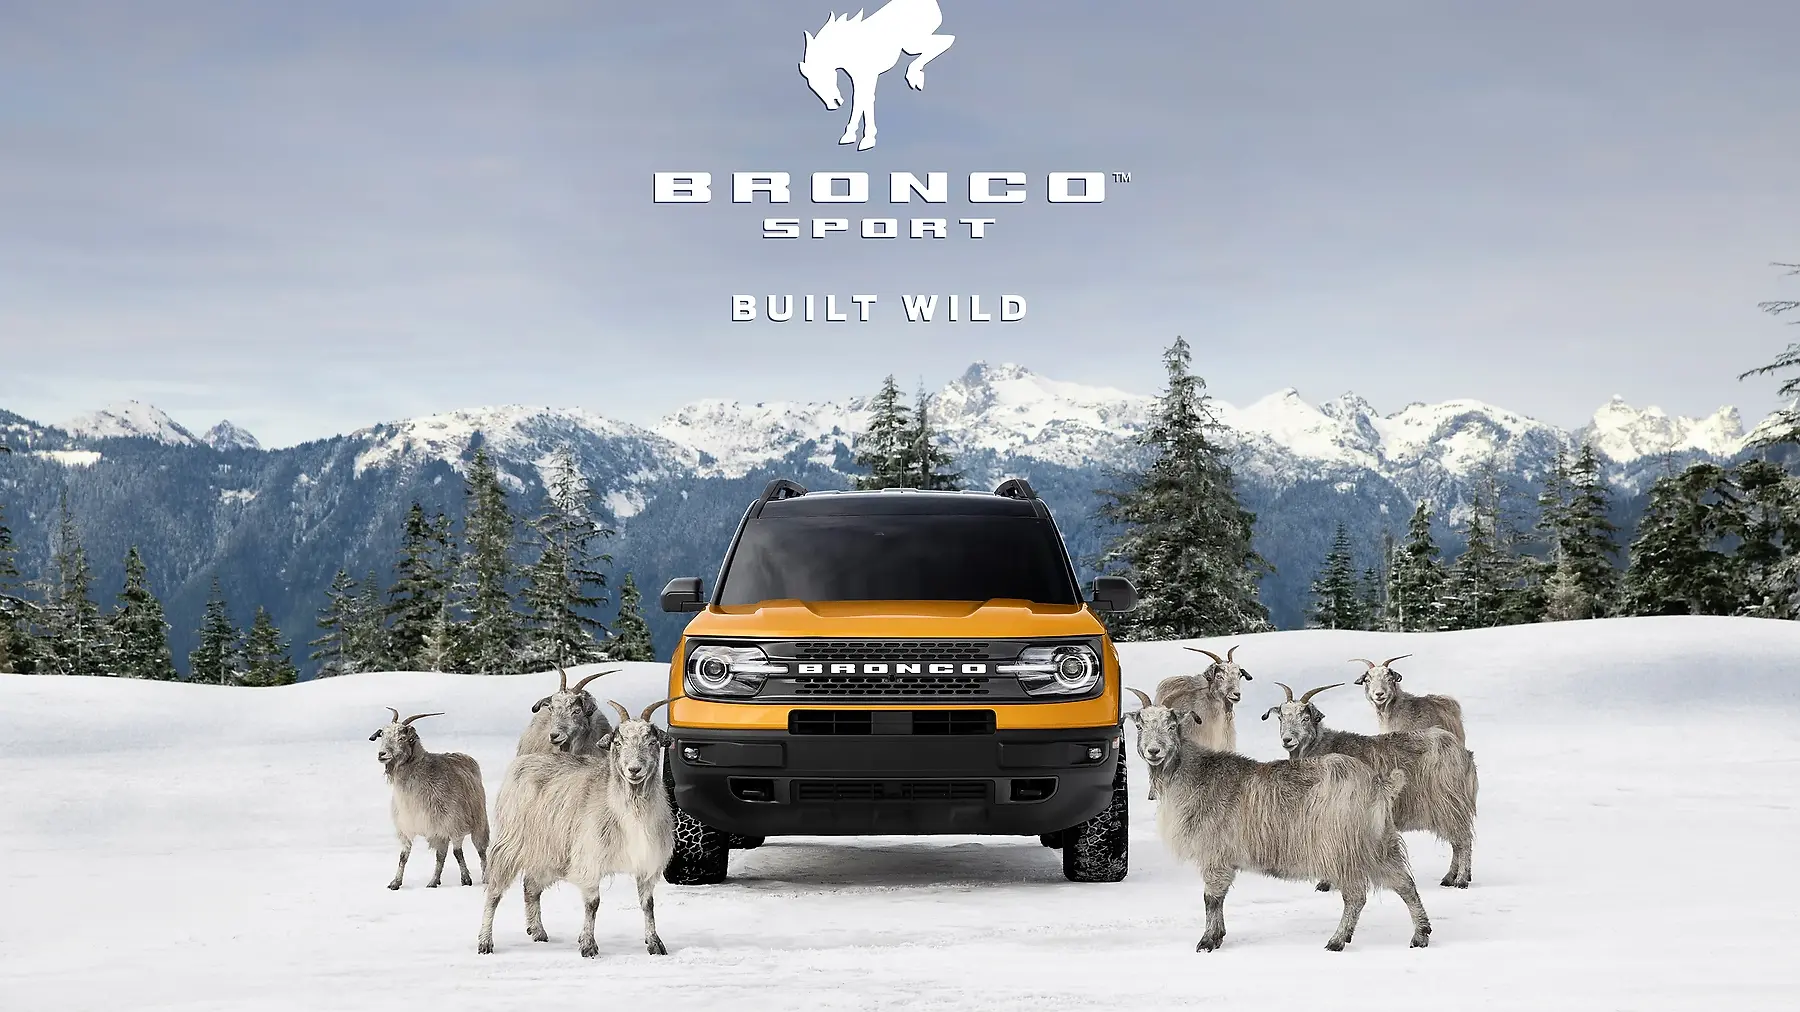 Ford Bronco Ad (Texan)